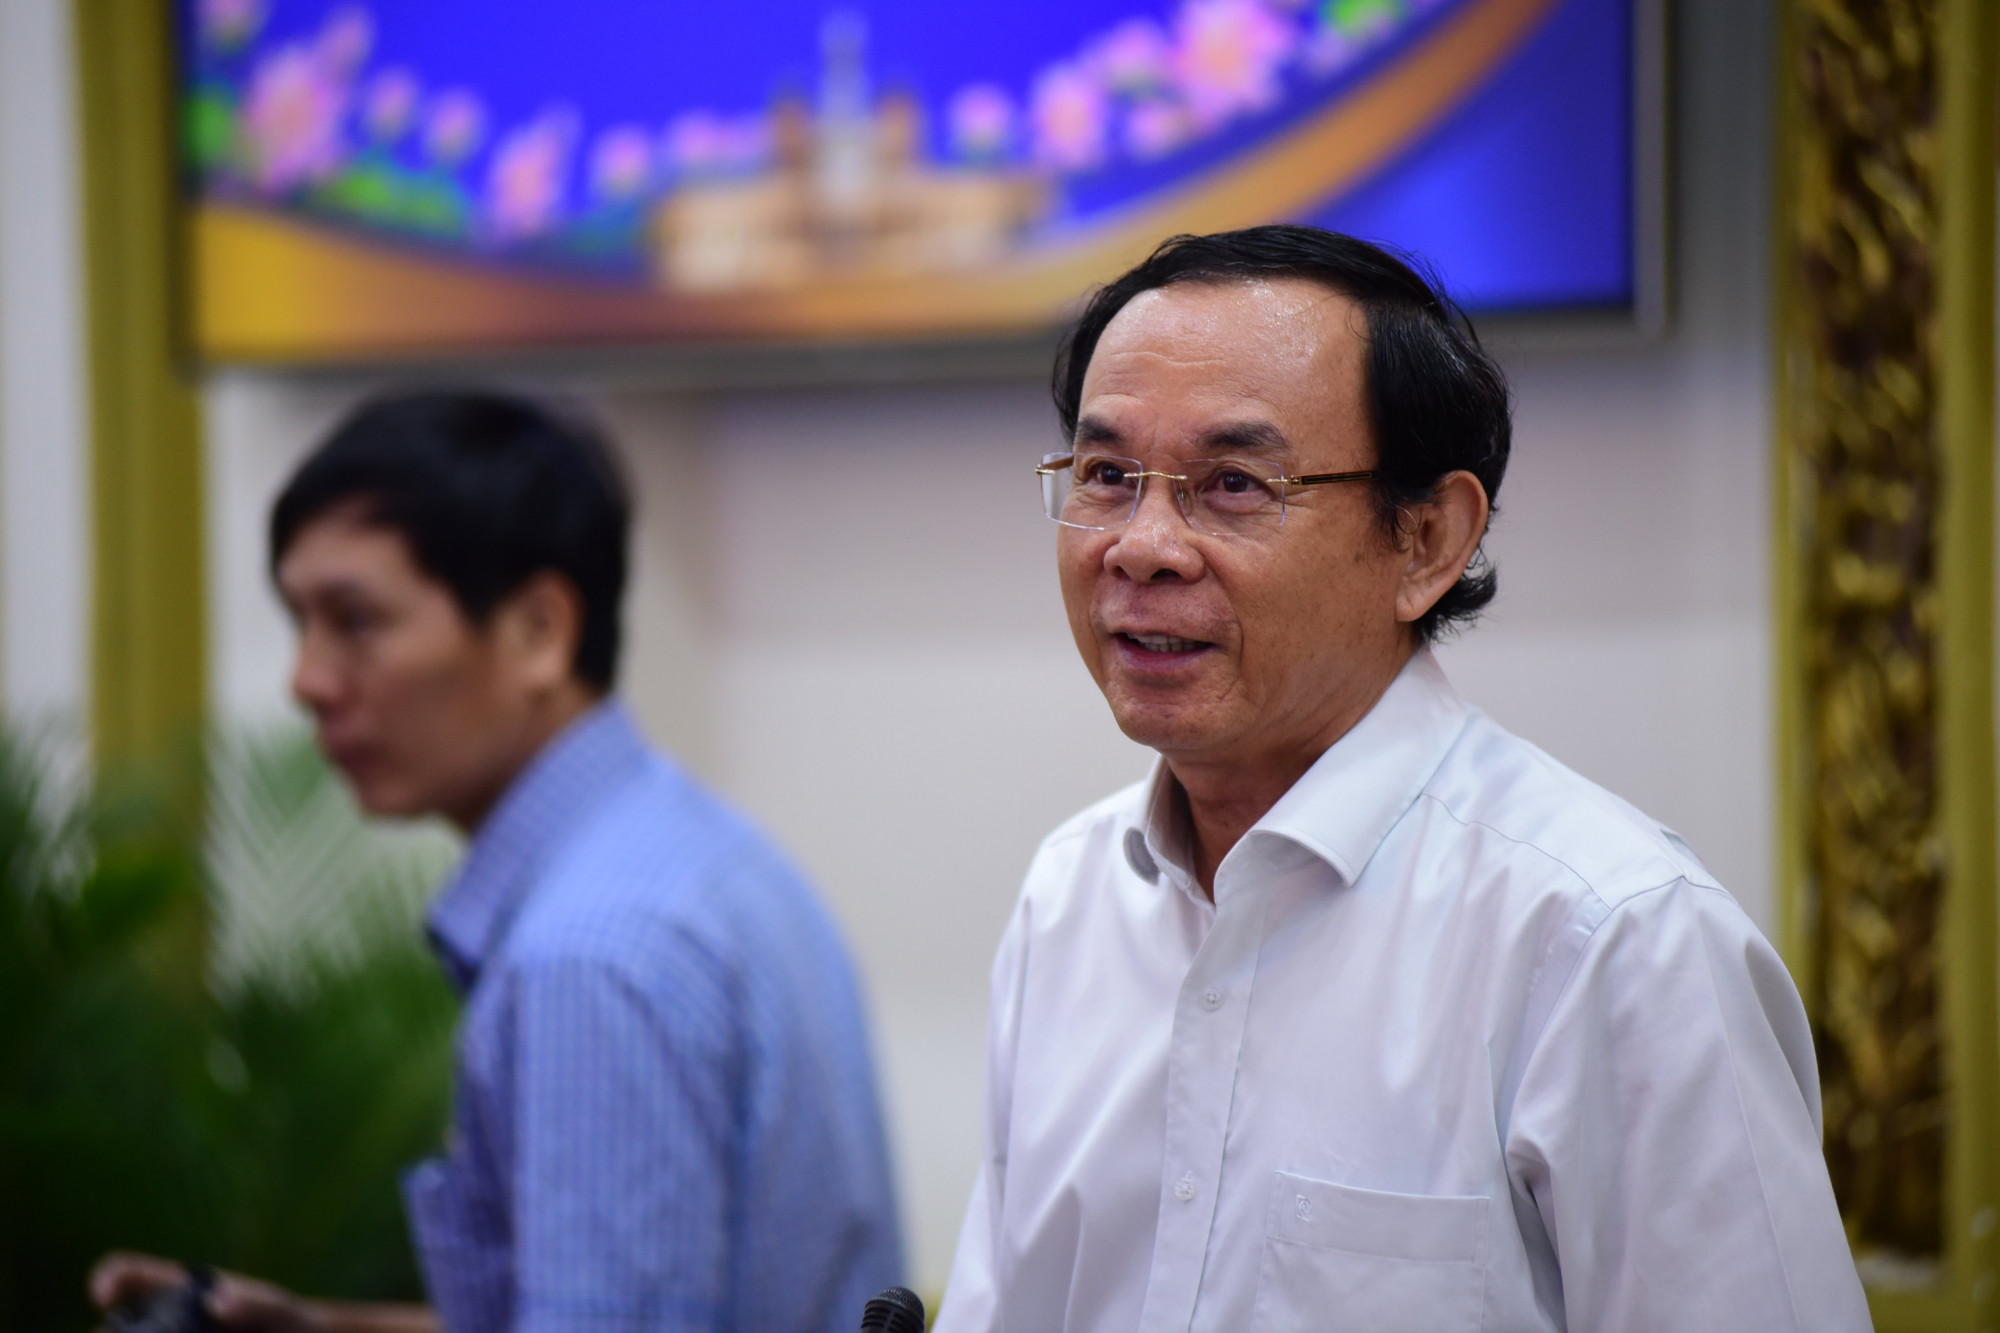 Bí thư Thành ủy TPHCM Nguyễn Văn Nên khuyến khích doanh nghiệp nhắn tin cho ông nếu quan hệ chính quyền - doanh nghiệp không trong sáng